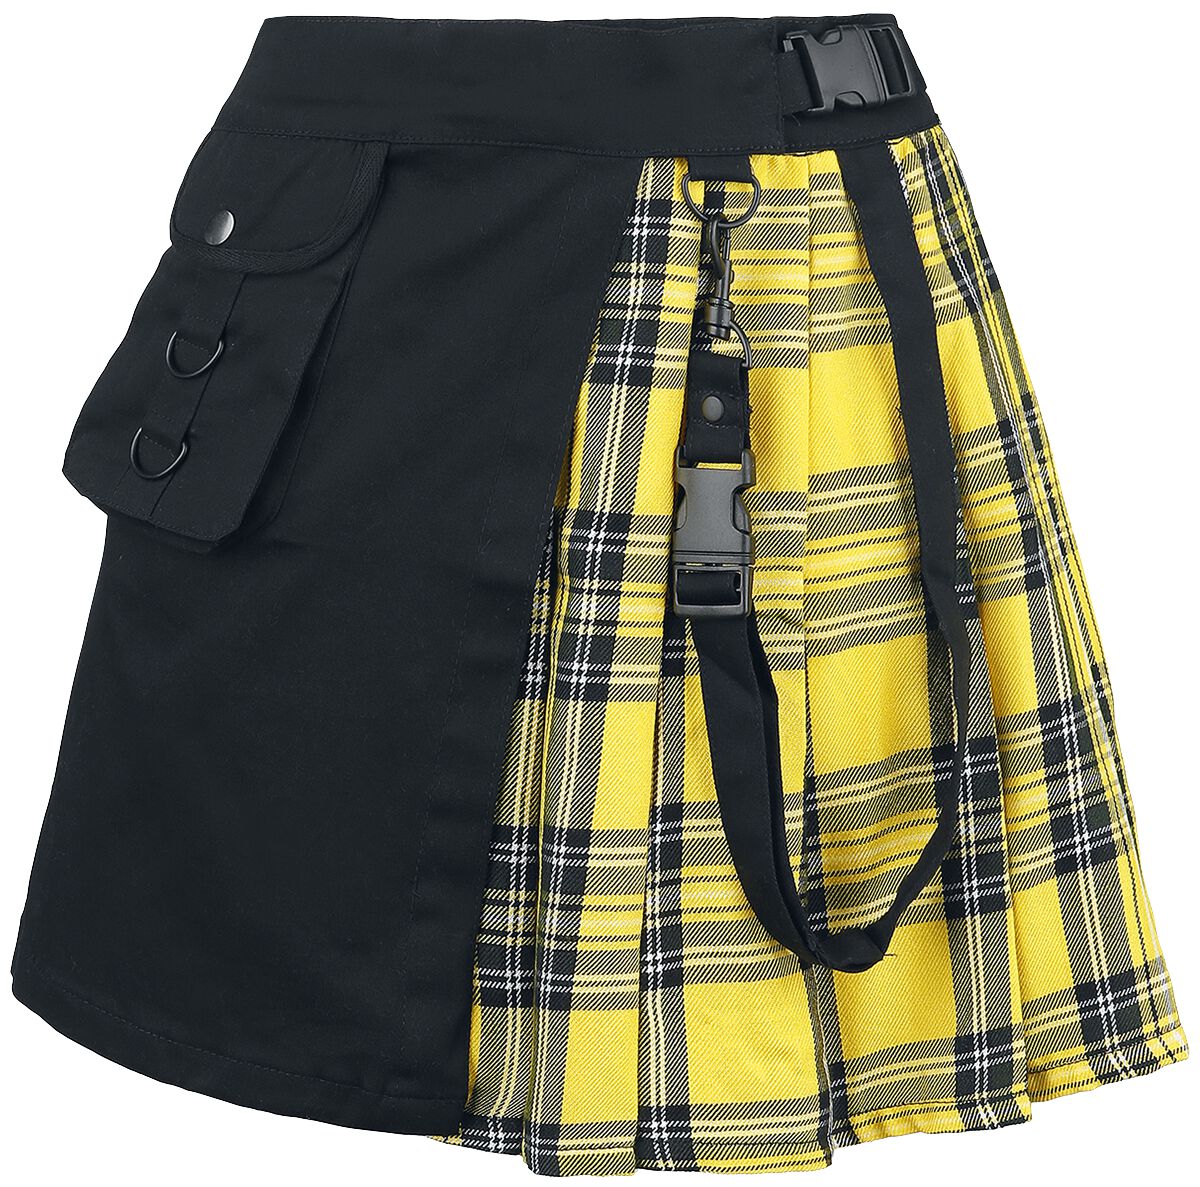 Chemical Black Infinity Skirt Kurzer Rock schwarz gelb in XS